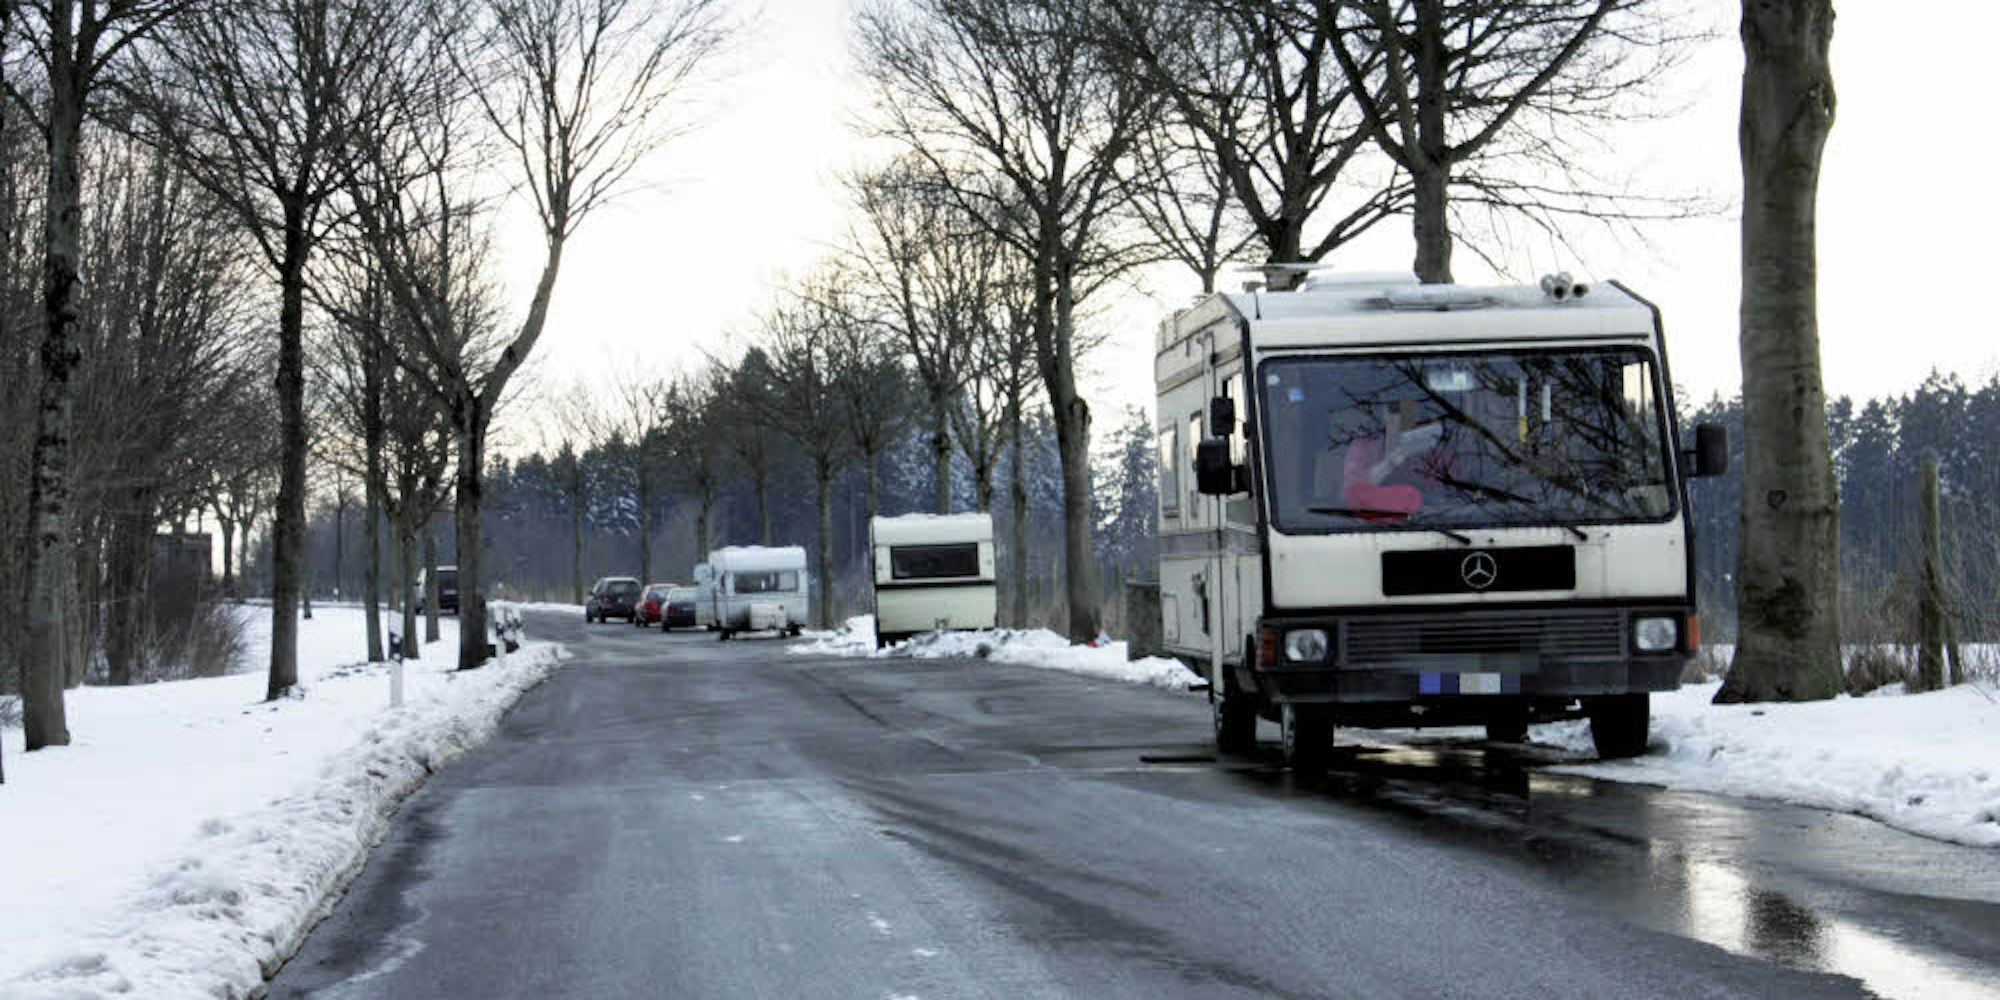 Prostitution in Wohnwagen entlang einiger Straßen um Blankenheim ist an der Tagesordnung. Dieser Parkplatz an der B 51 wurde mittlerweile gesperrt, für andere Wege und Plätze müssen nun Mietverträge abgeschlossen werden.